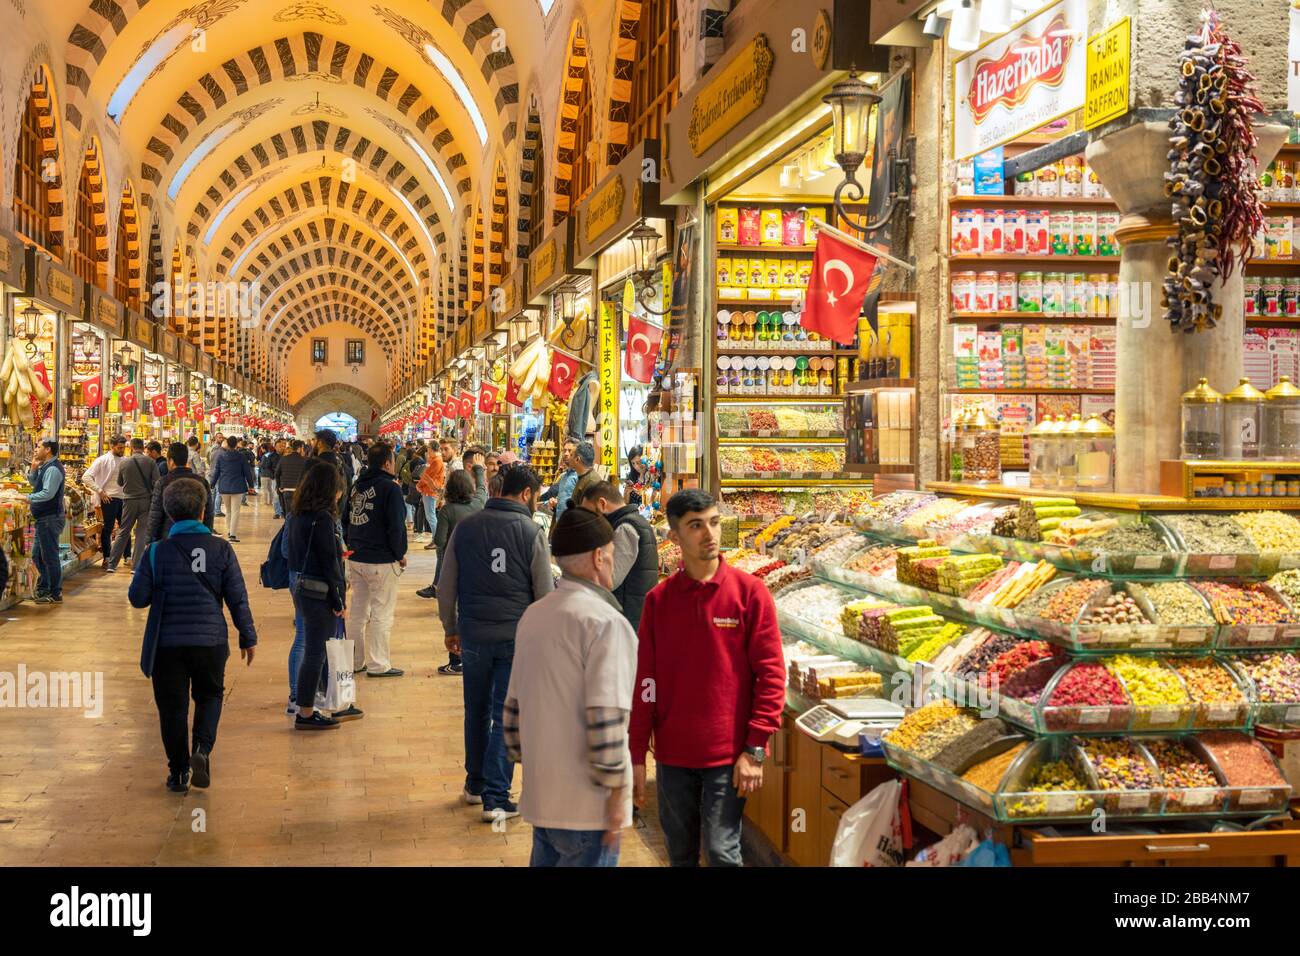 Türkei, Istanbul, Eminönü, ägyptischer oder Gewürzbasar Bazaar (Spice Bazaar). Foto Stock